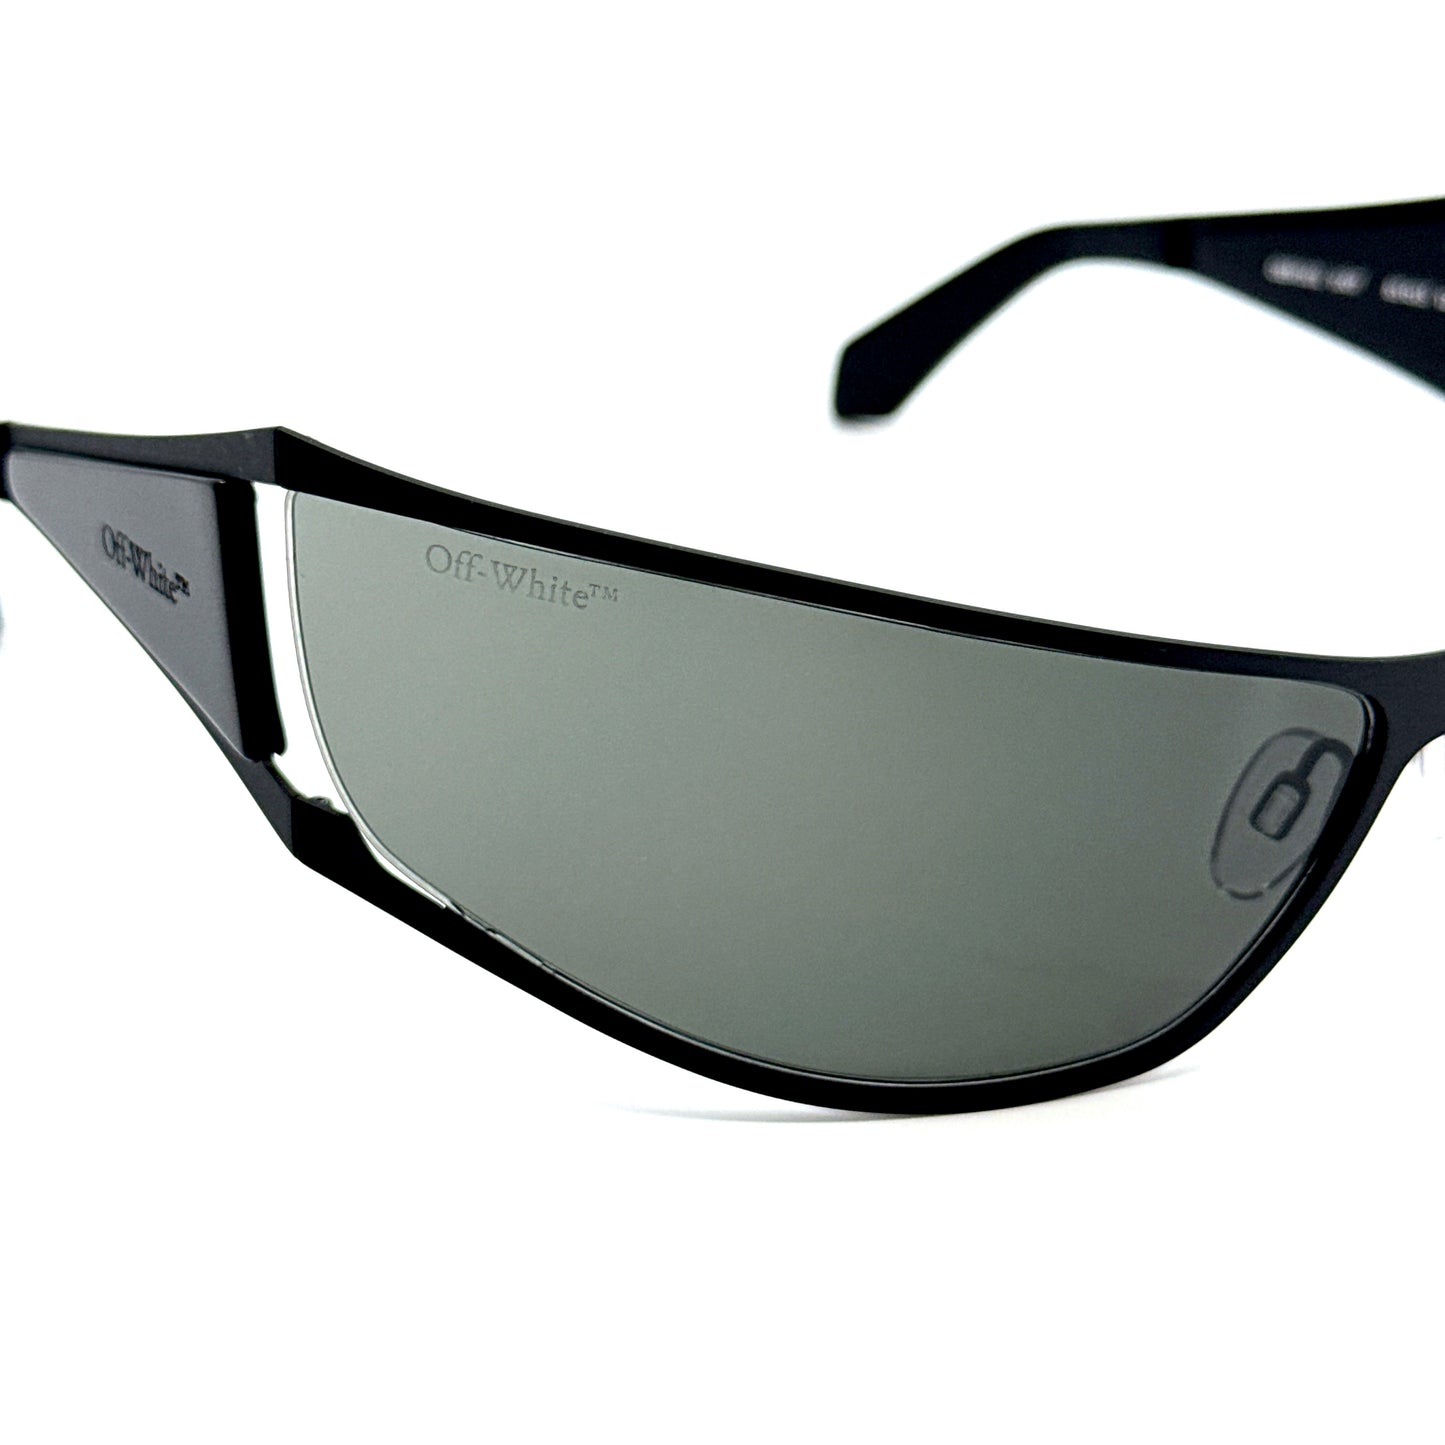 OFF-WHITE Sunglasses Luna OERI102 1007